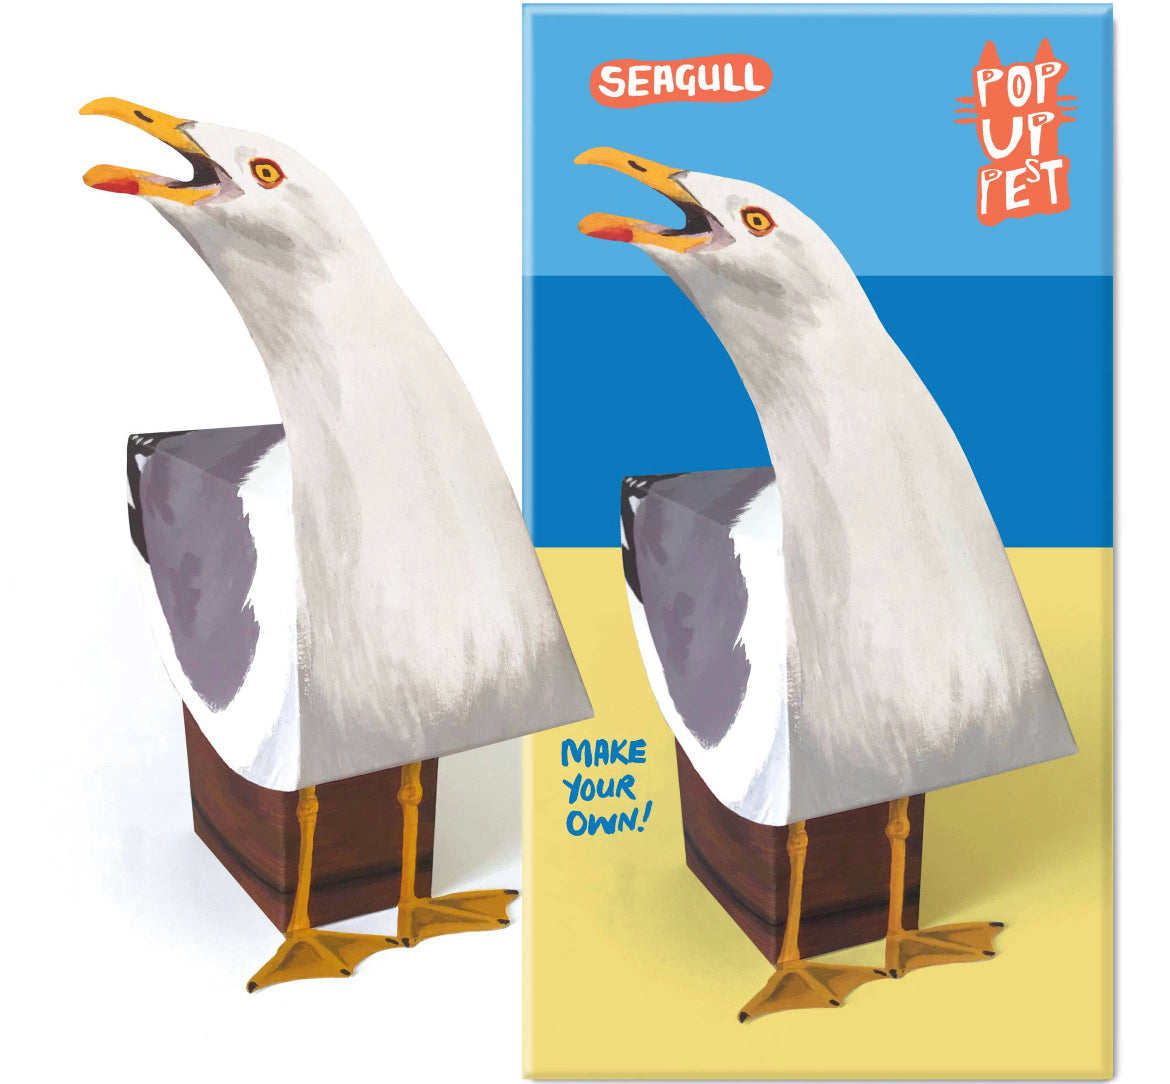 Pop Up Pet Seagull